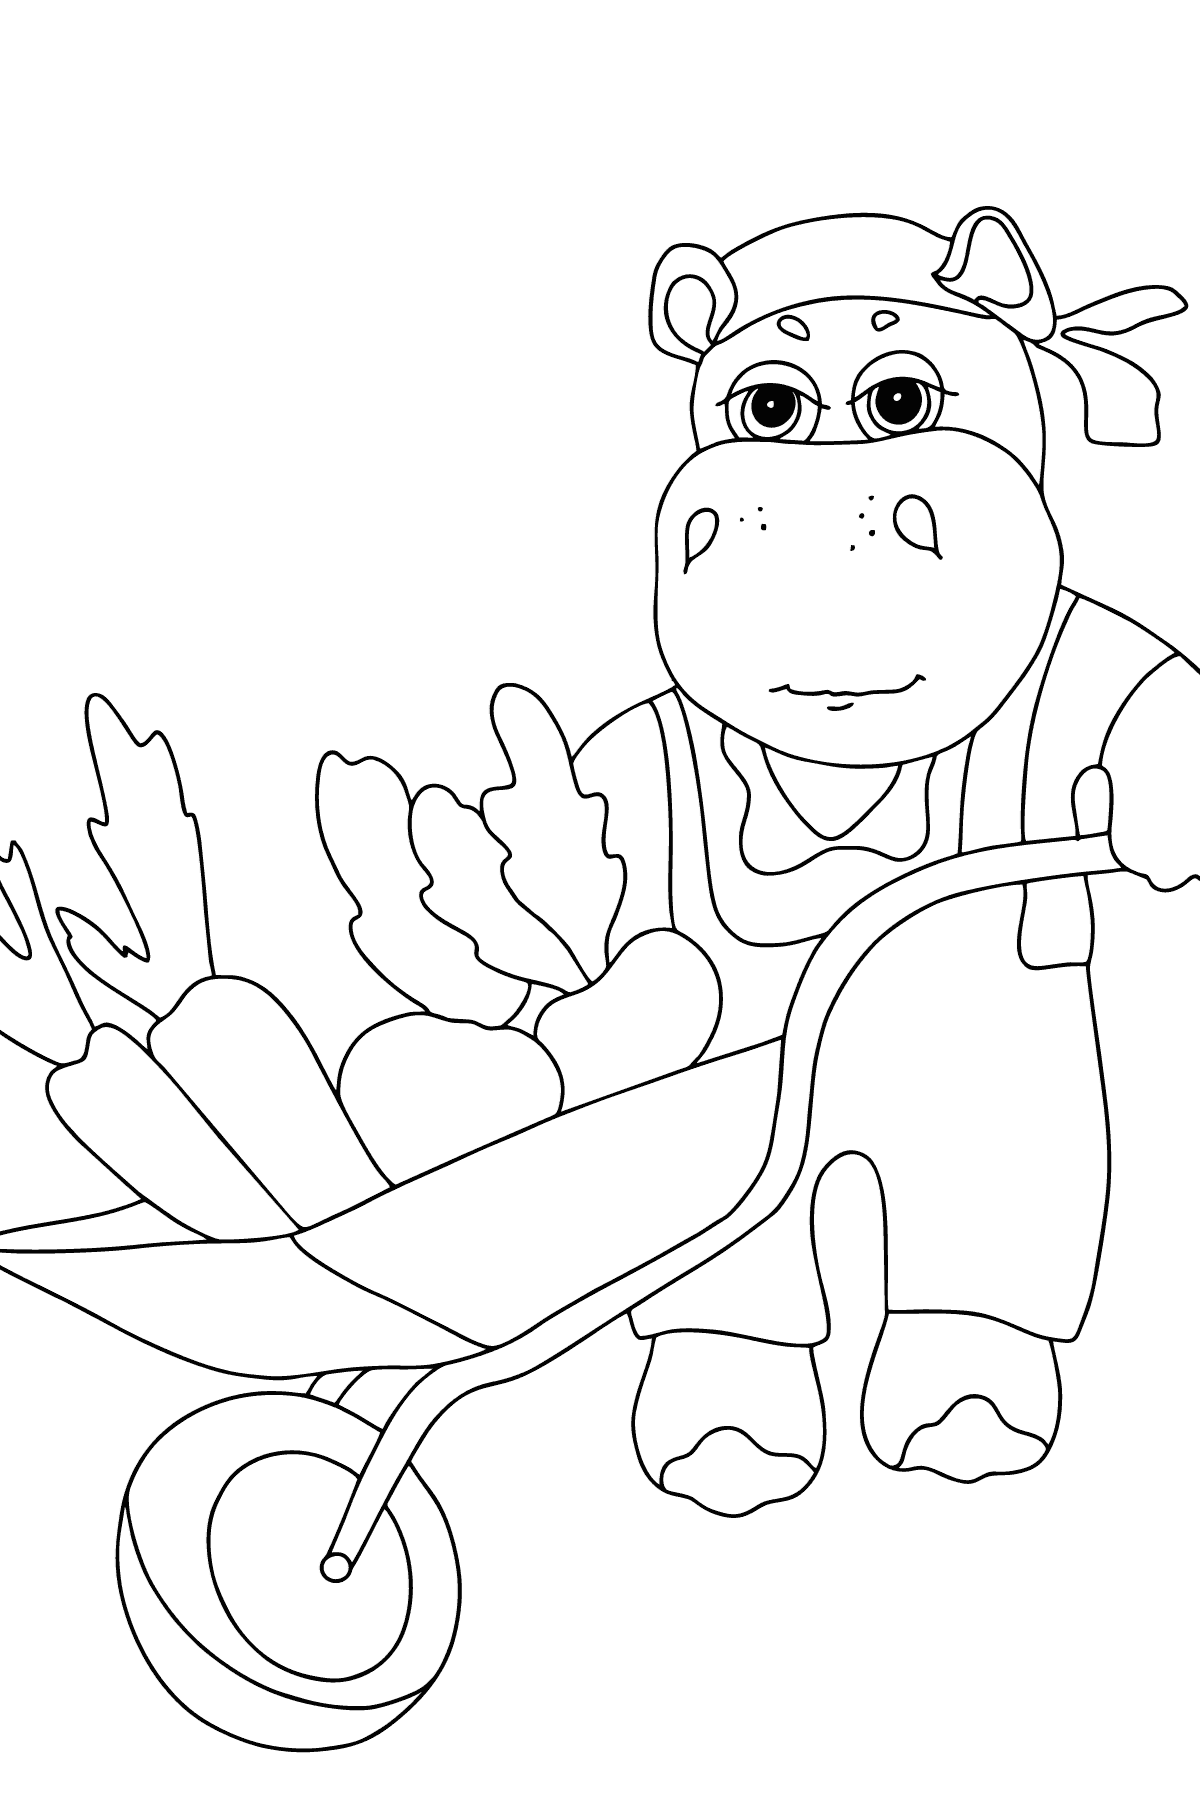 Kolorowanka dla dzieci Hippo - Kolorowanki dla dzieci